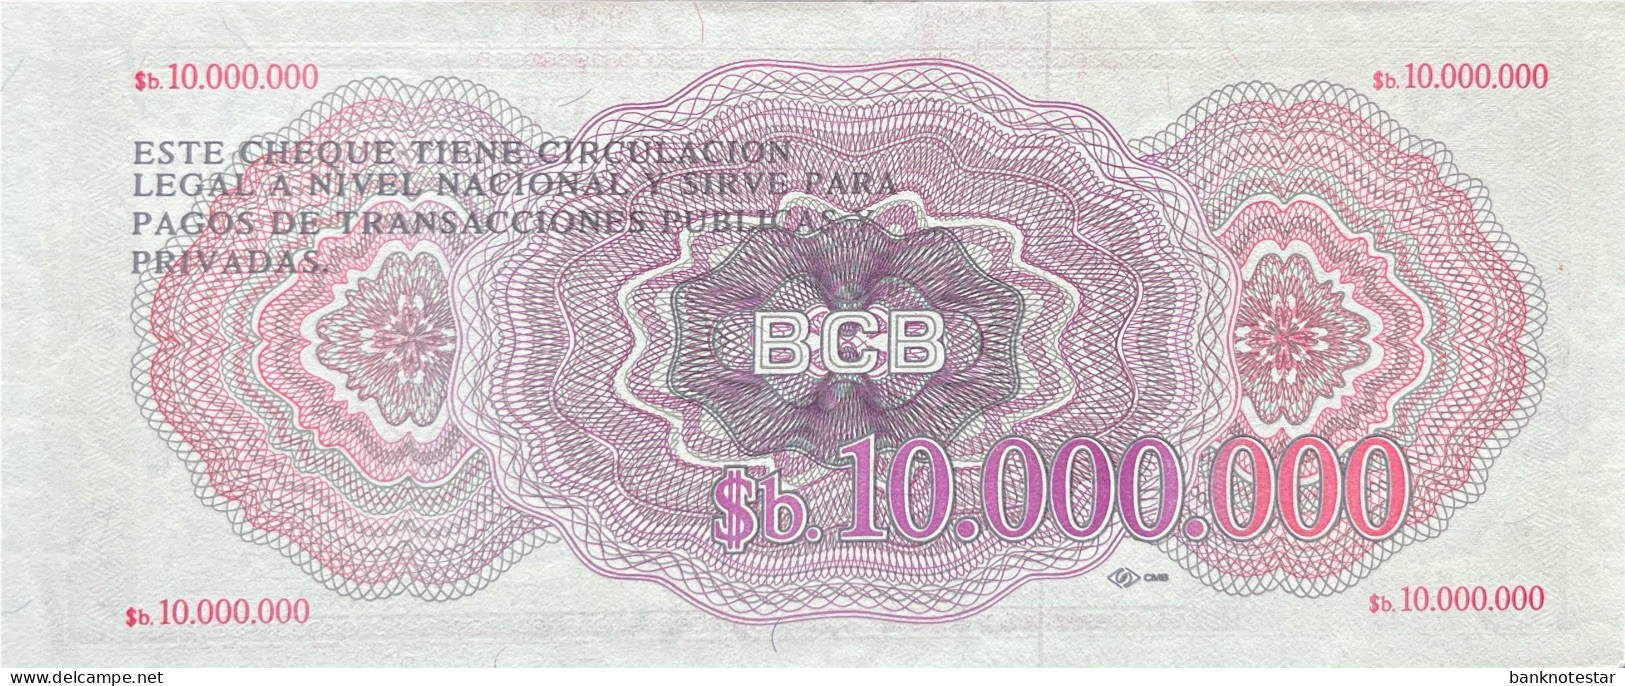 Bolivia 10.000.000 Pesos Bolivianos, P-192B (D.1985) - B0000303 - UNC - RARE - Bolivien